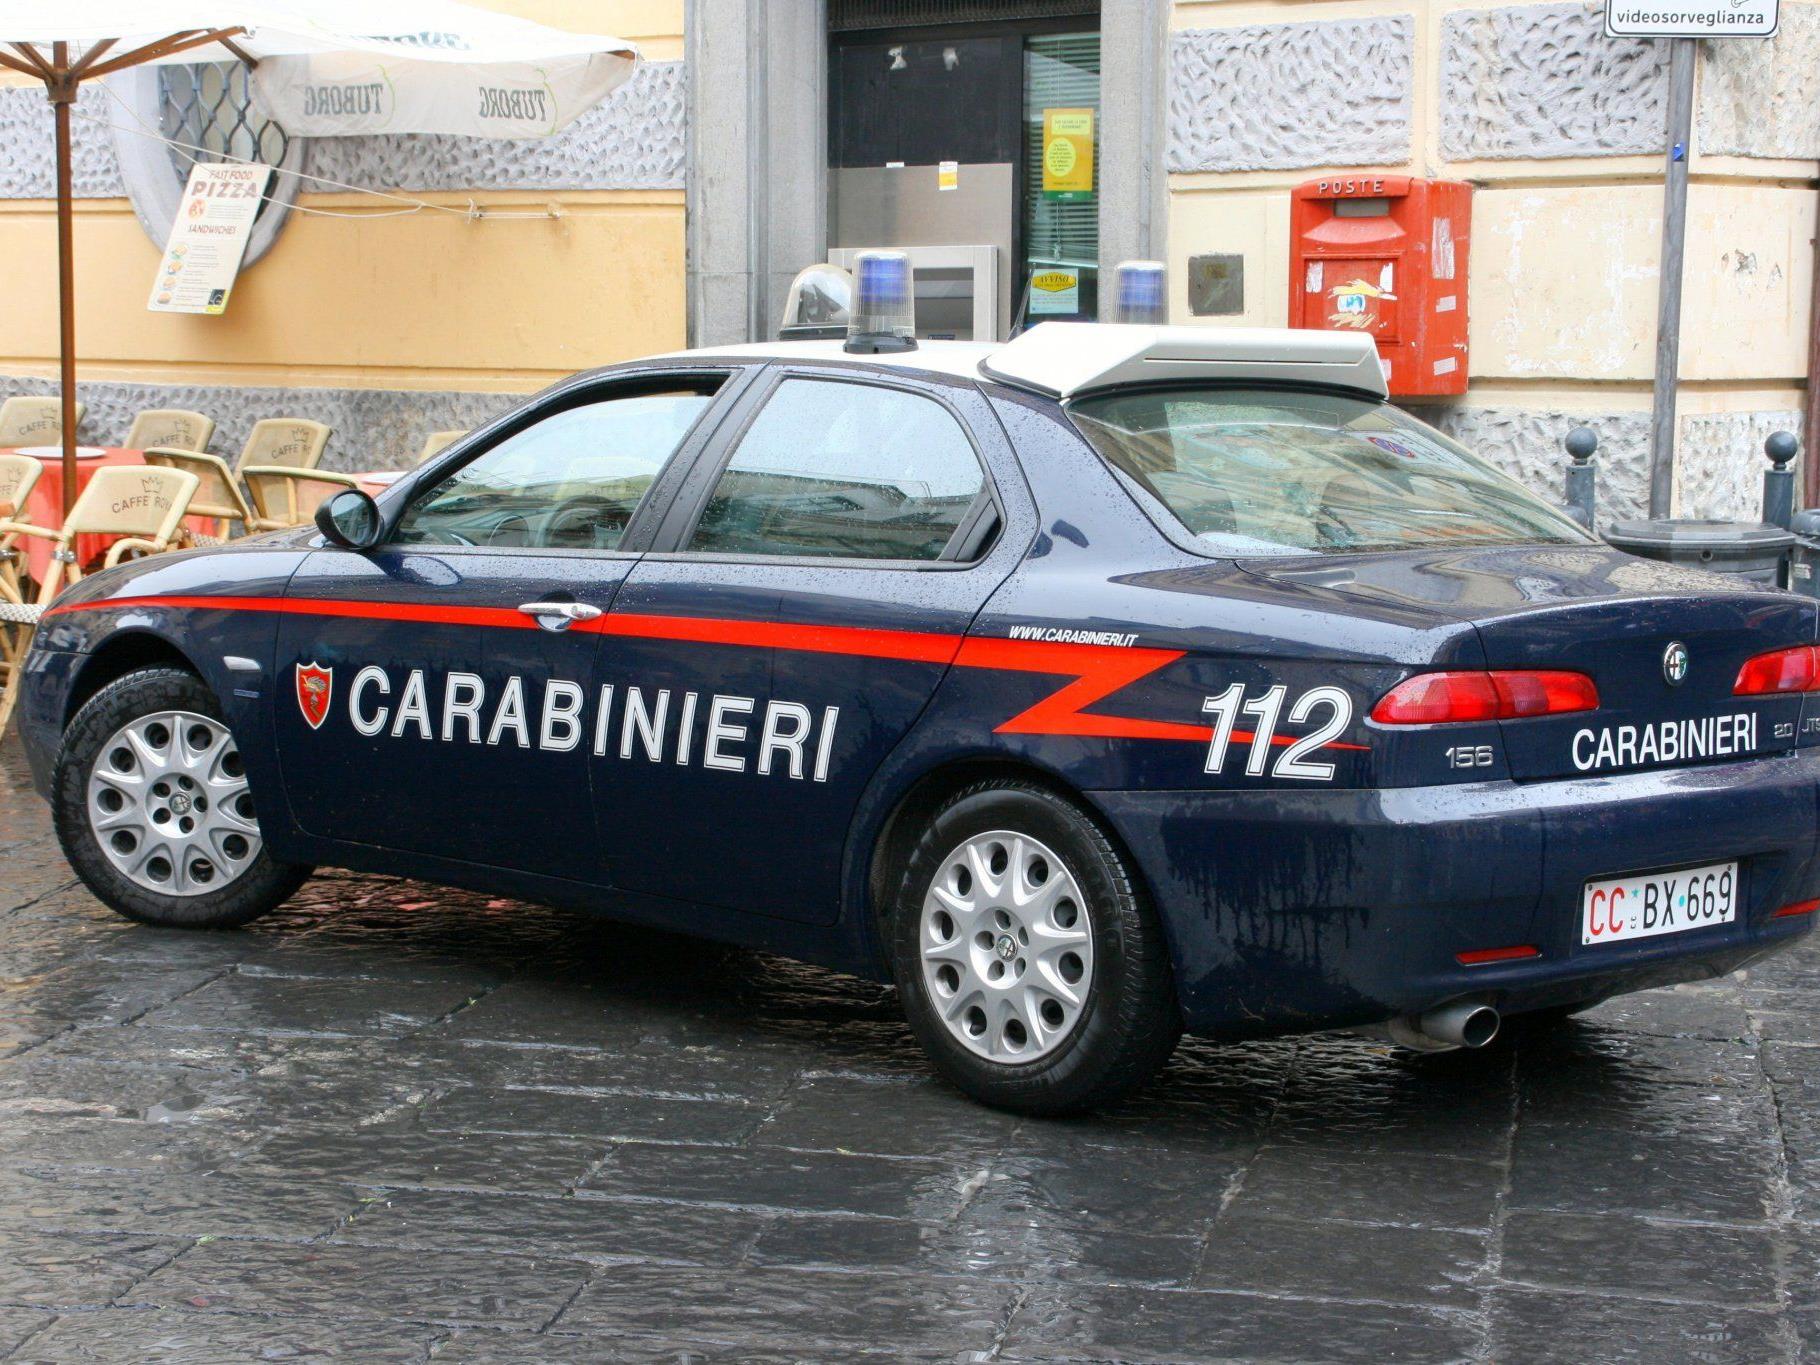 In Wien wurde ein 42-jähriger Mann festgenommen, der verdächtigt wird einen Carabinieri überfahren zu haben.